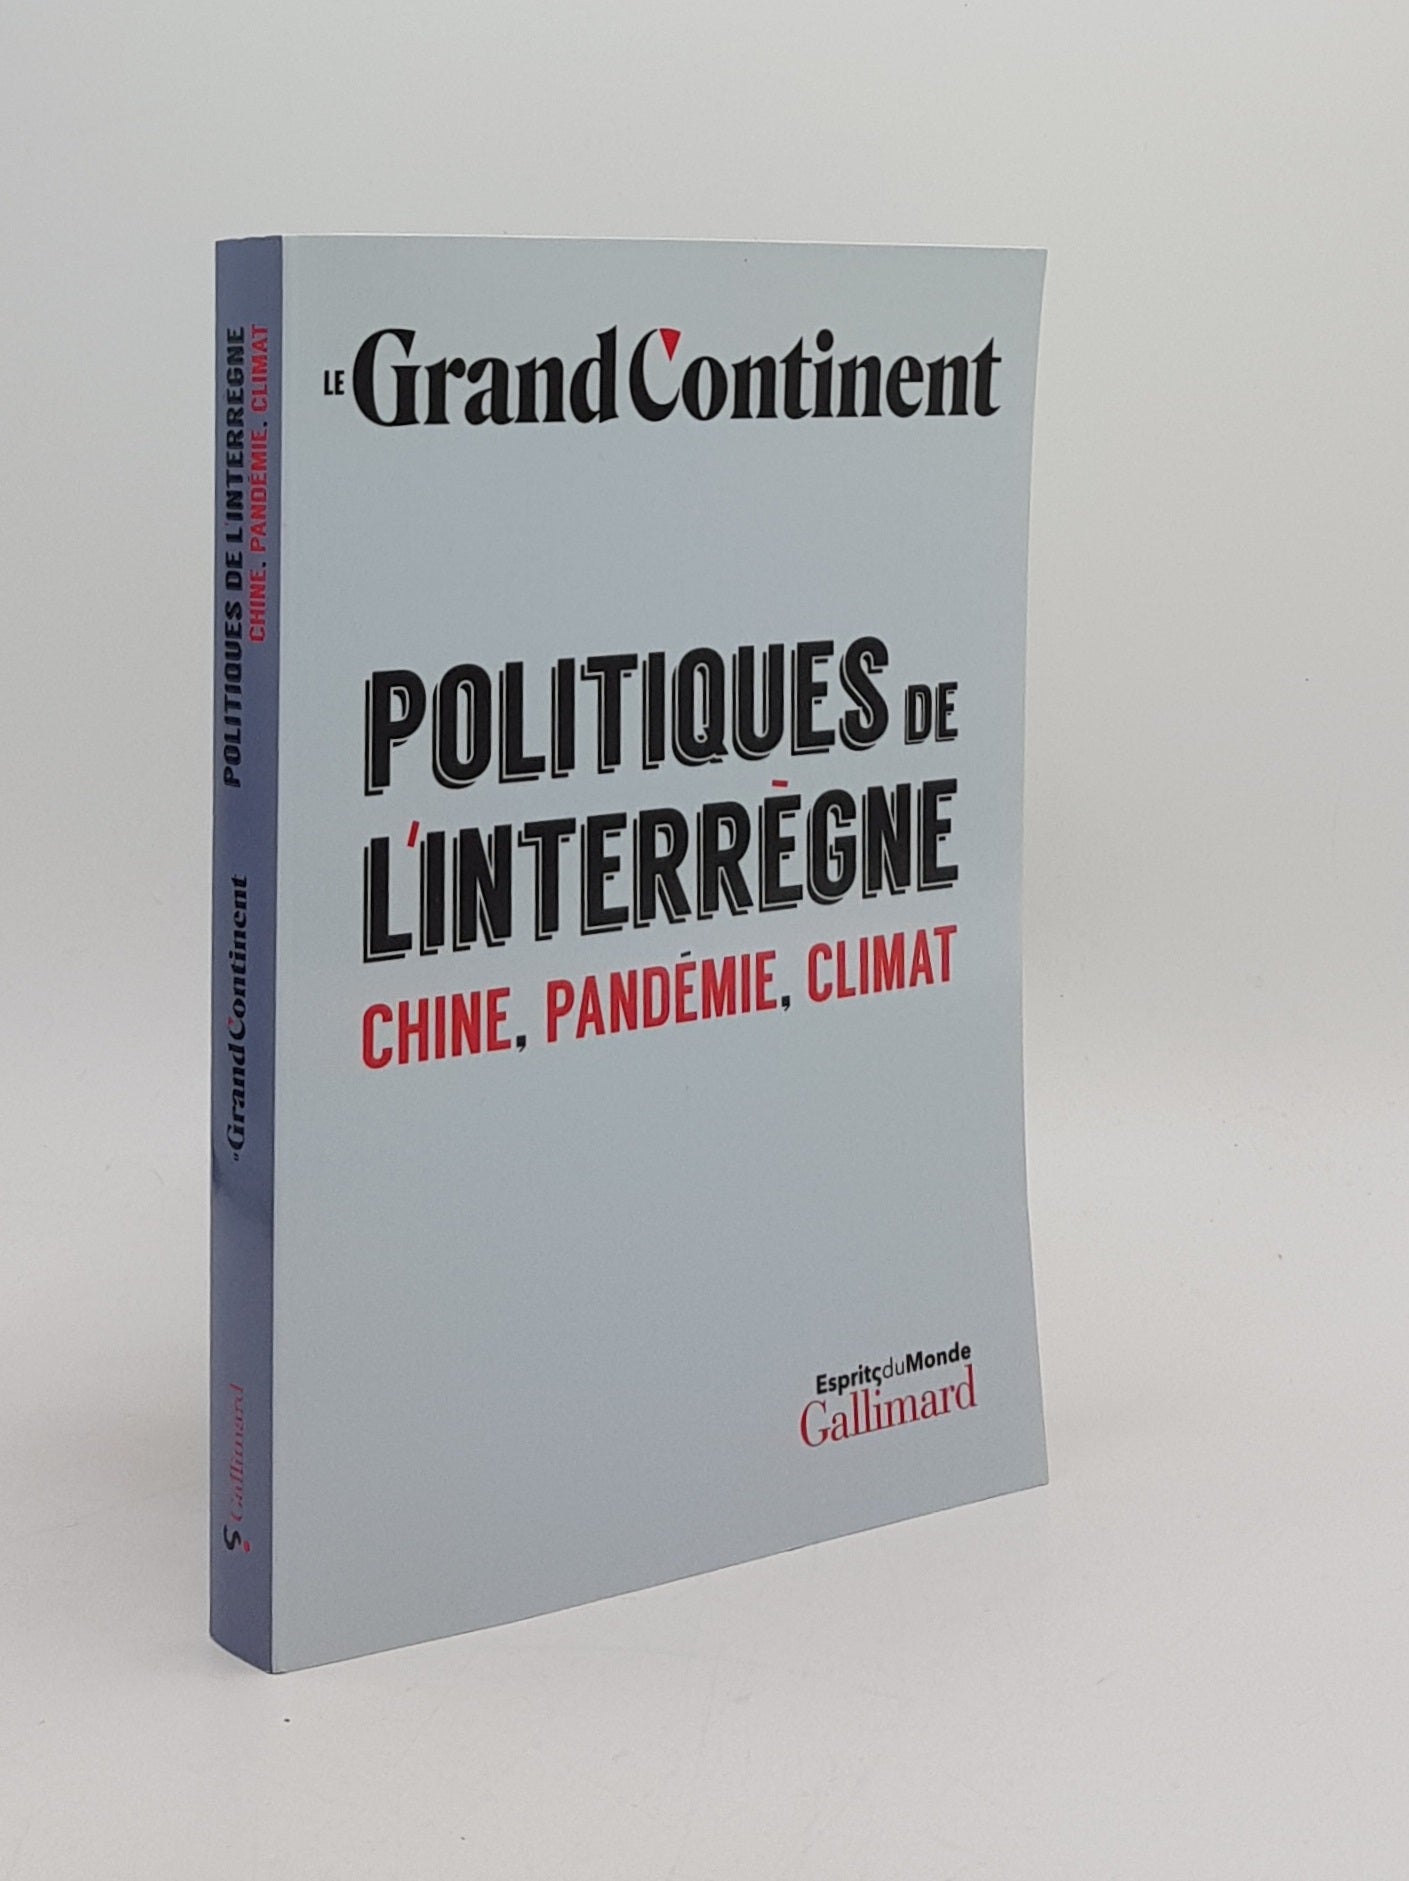 Le Grand Continent - Politiques de L'Interregne Chine Pandmie Climat